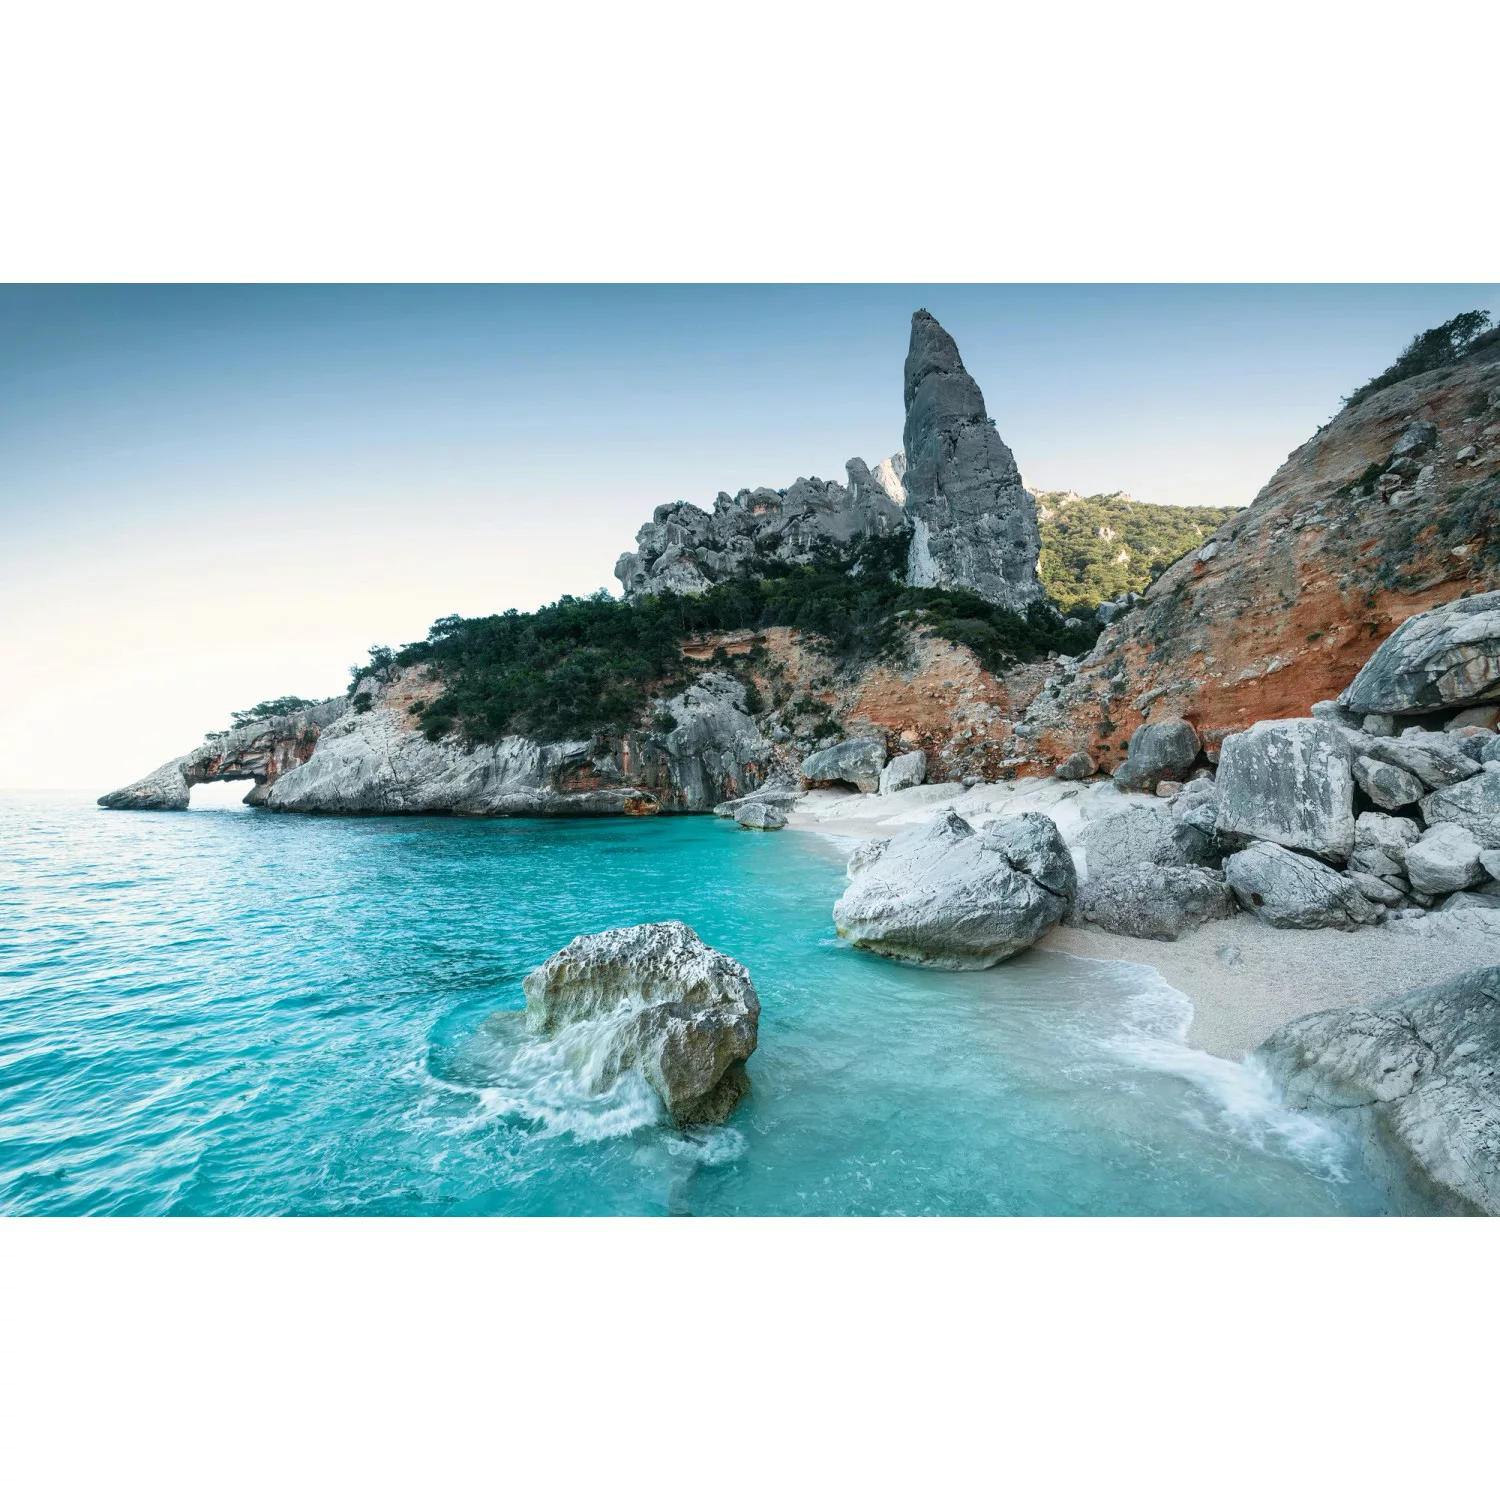 KOMAR Vlies Fototapete - Beach Tales - Größe 450 x 280 cm mehrfarbig günstig online kaufen